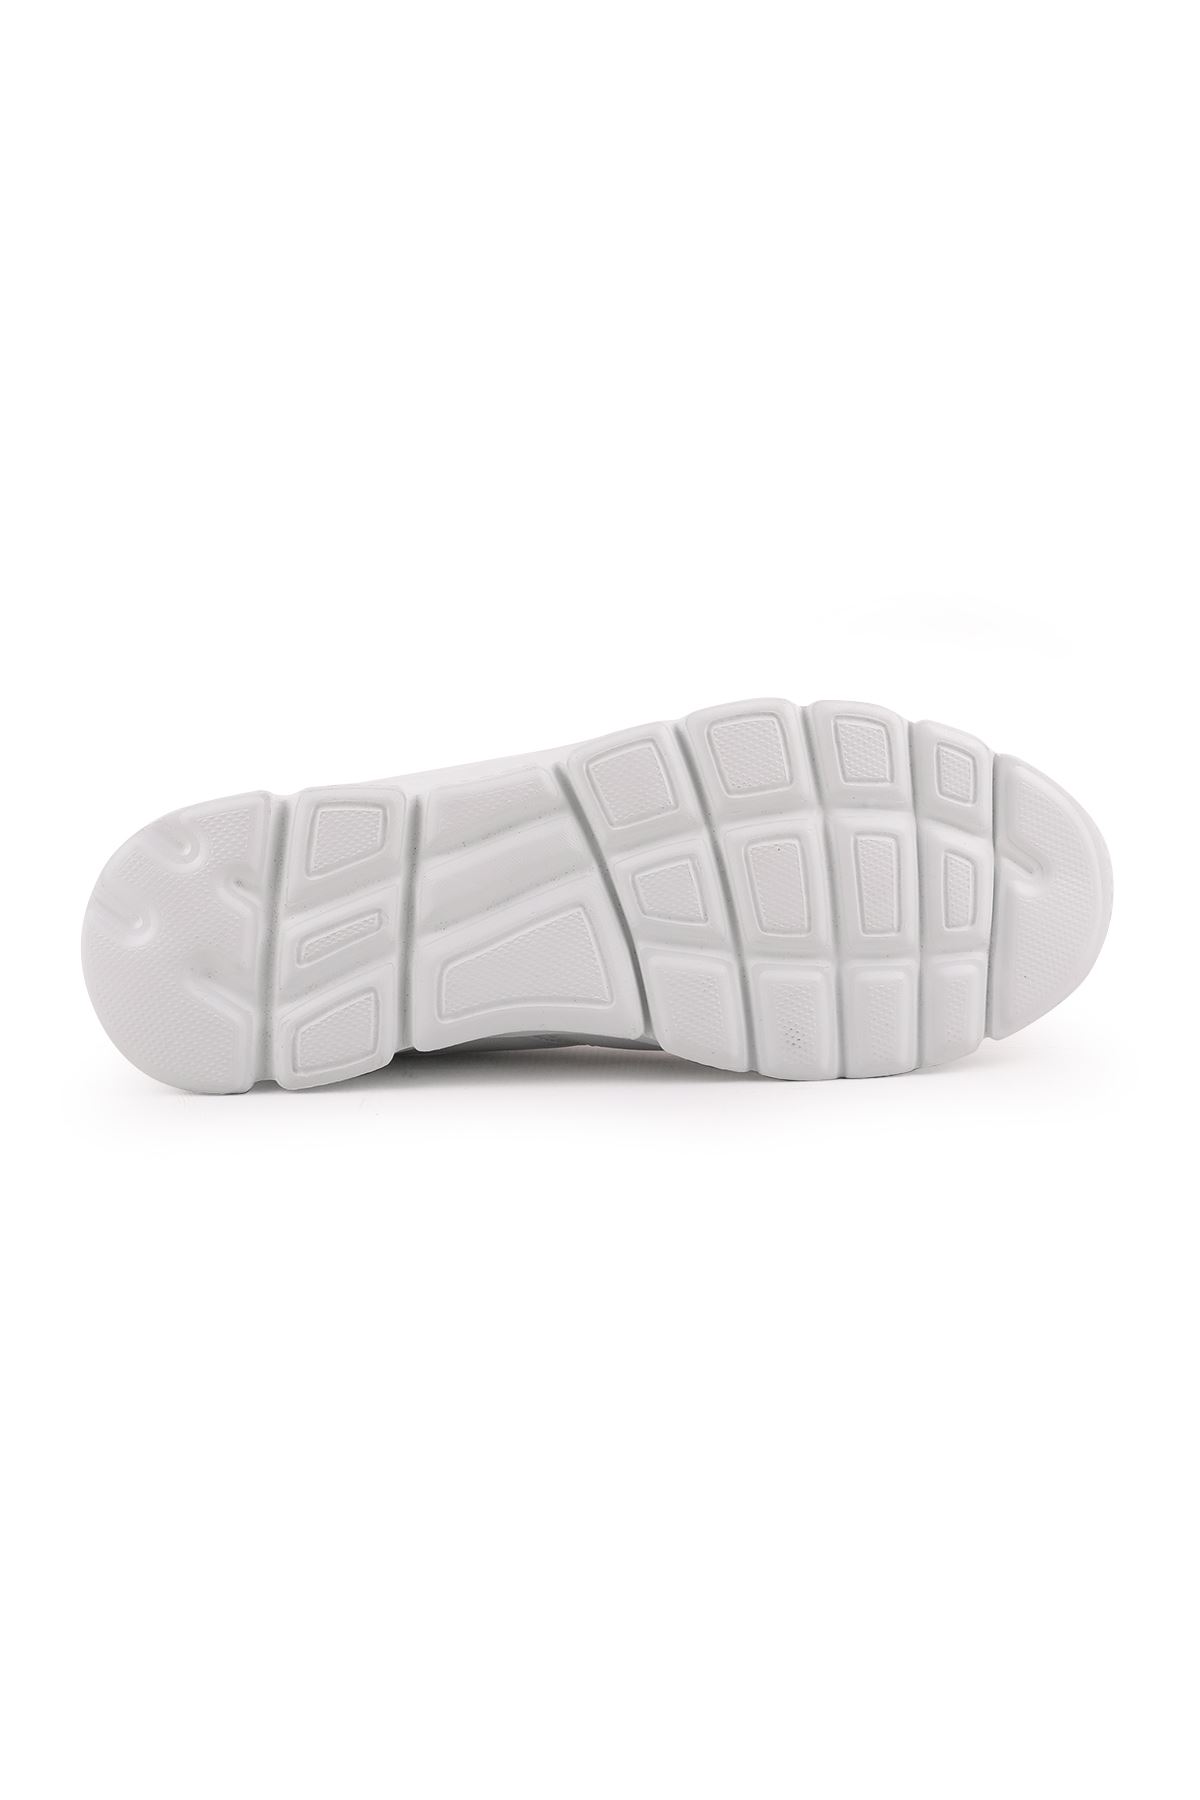 Libero L5079 Beyaz Casual Erkek Ayakkabı 